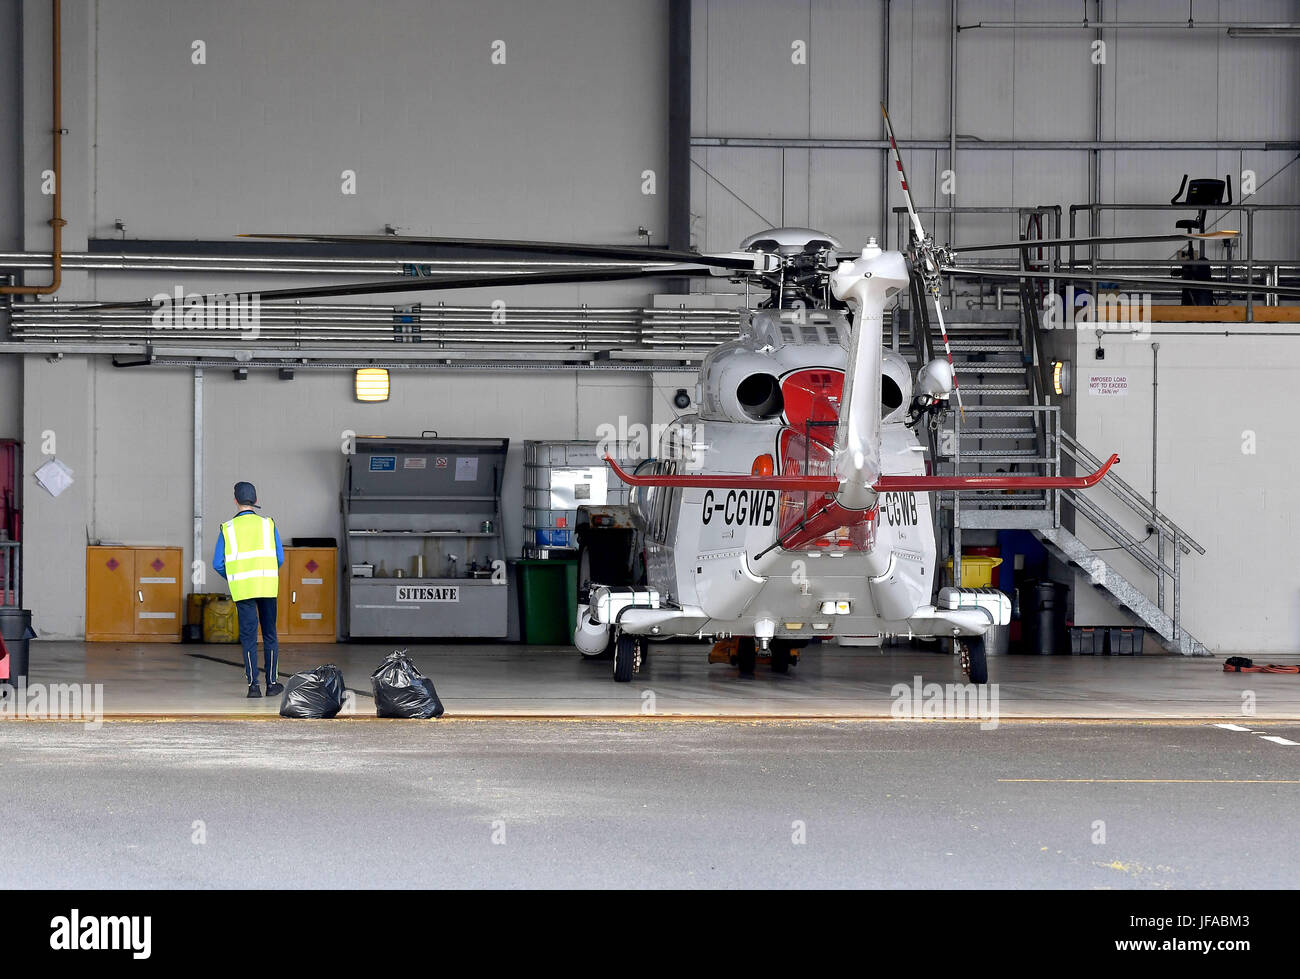 Dorset, UK. 30. Juni 2017. Nach mehr als 20 Jahren im Dienst, die Suche und Rettung Hubschrauber wird Basis nicht mehr funktionsfähig sein, als ein regionalen Service ersetzt und die nächste Basis Lee auf Solent in Hampshire wird. Bildnachweis: Finnbarr Webster/Alamy Live-Nachrichten Stockfoto